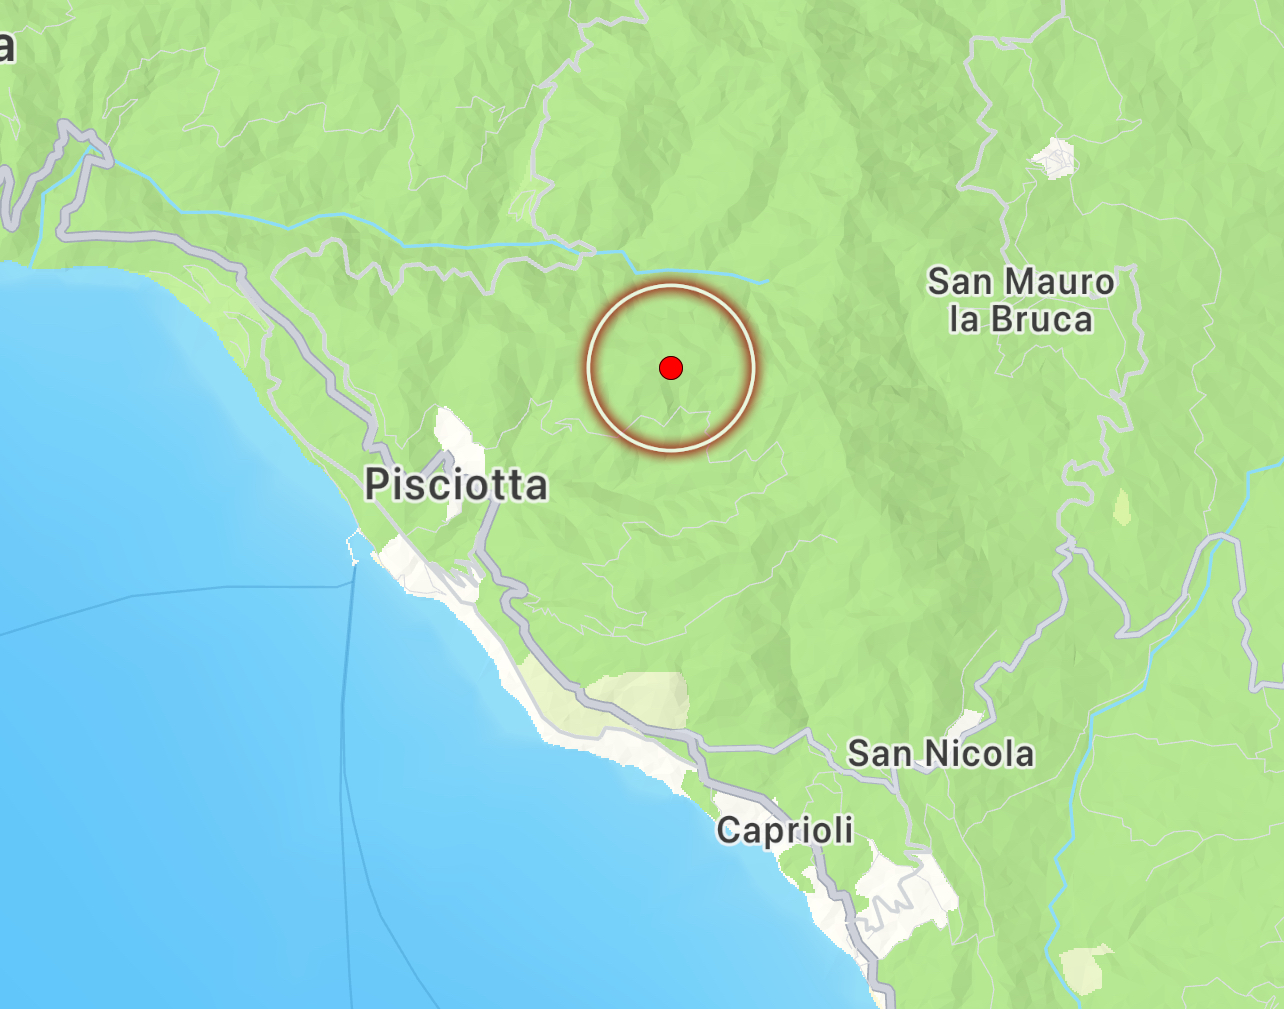 Scossa di terremoto magnitudo 2.9: epicentro a Pisciotta